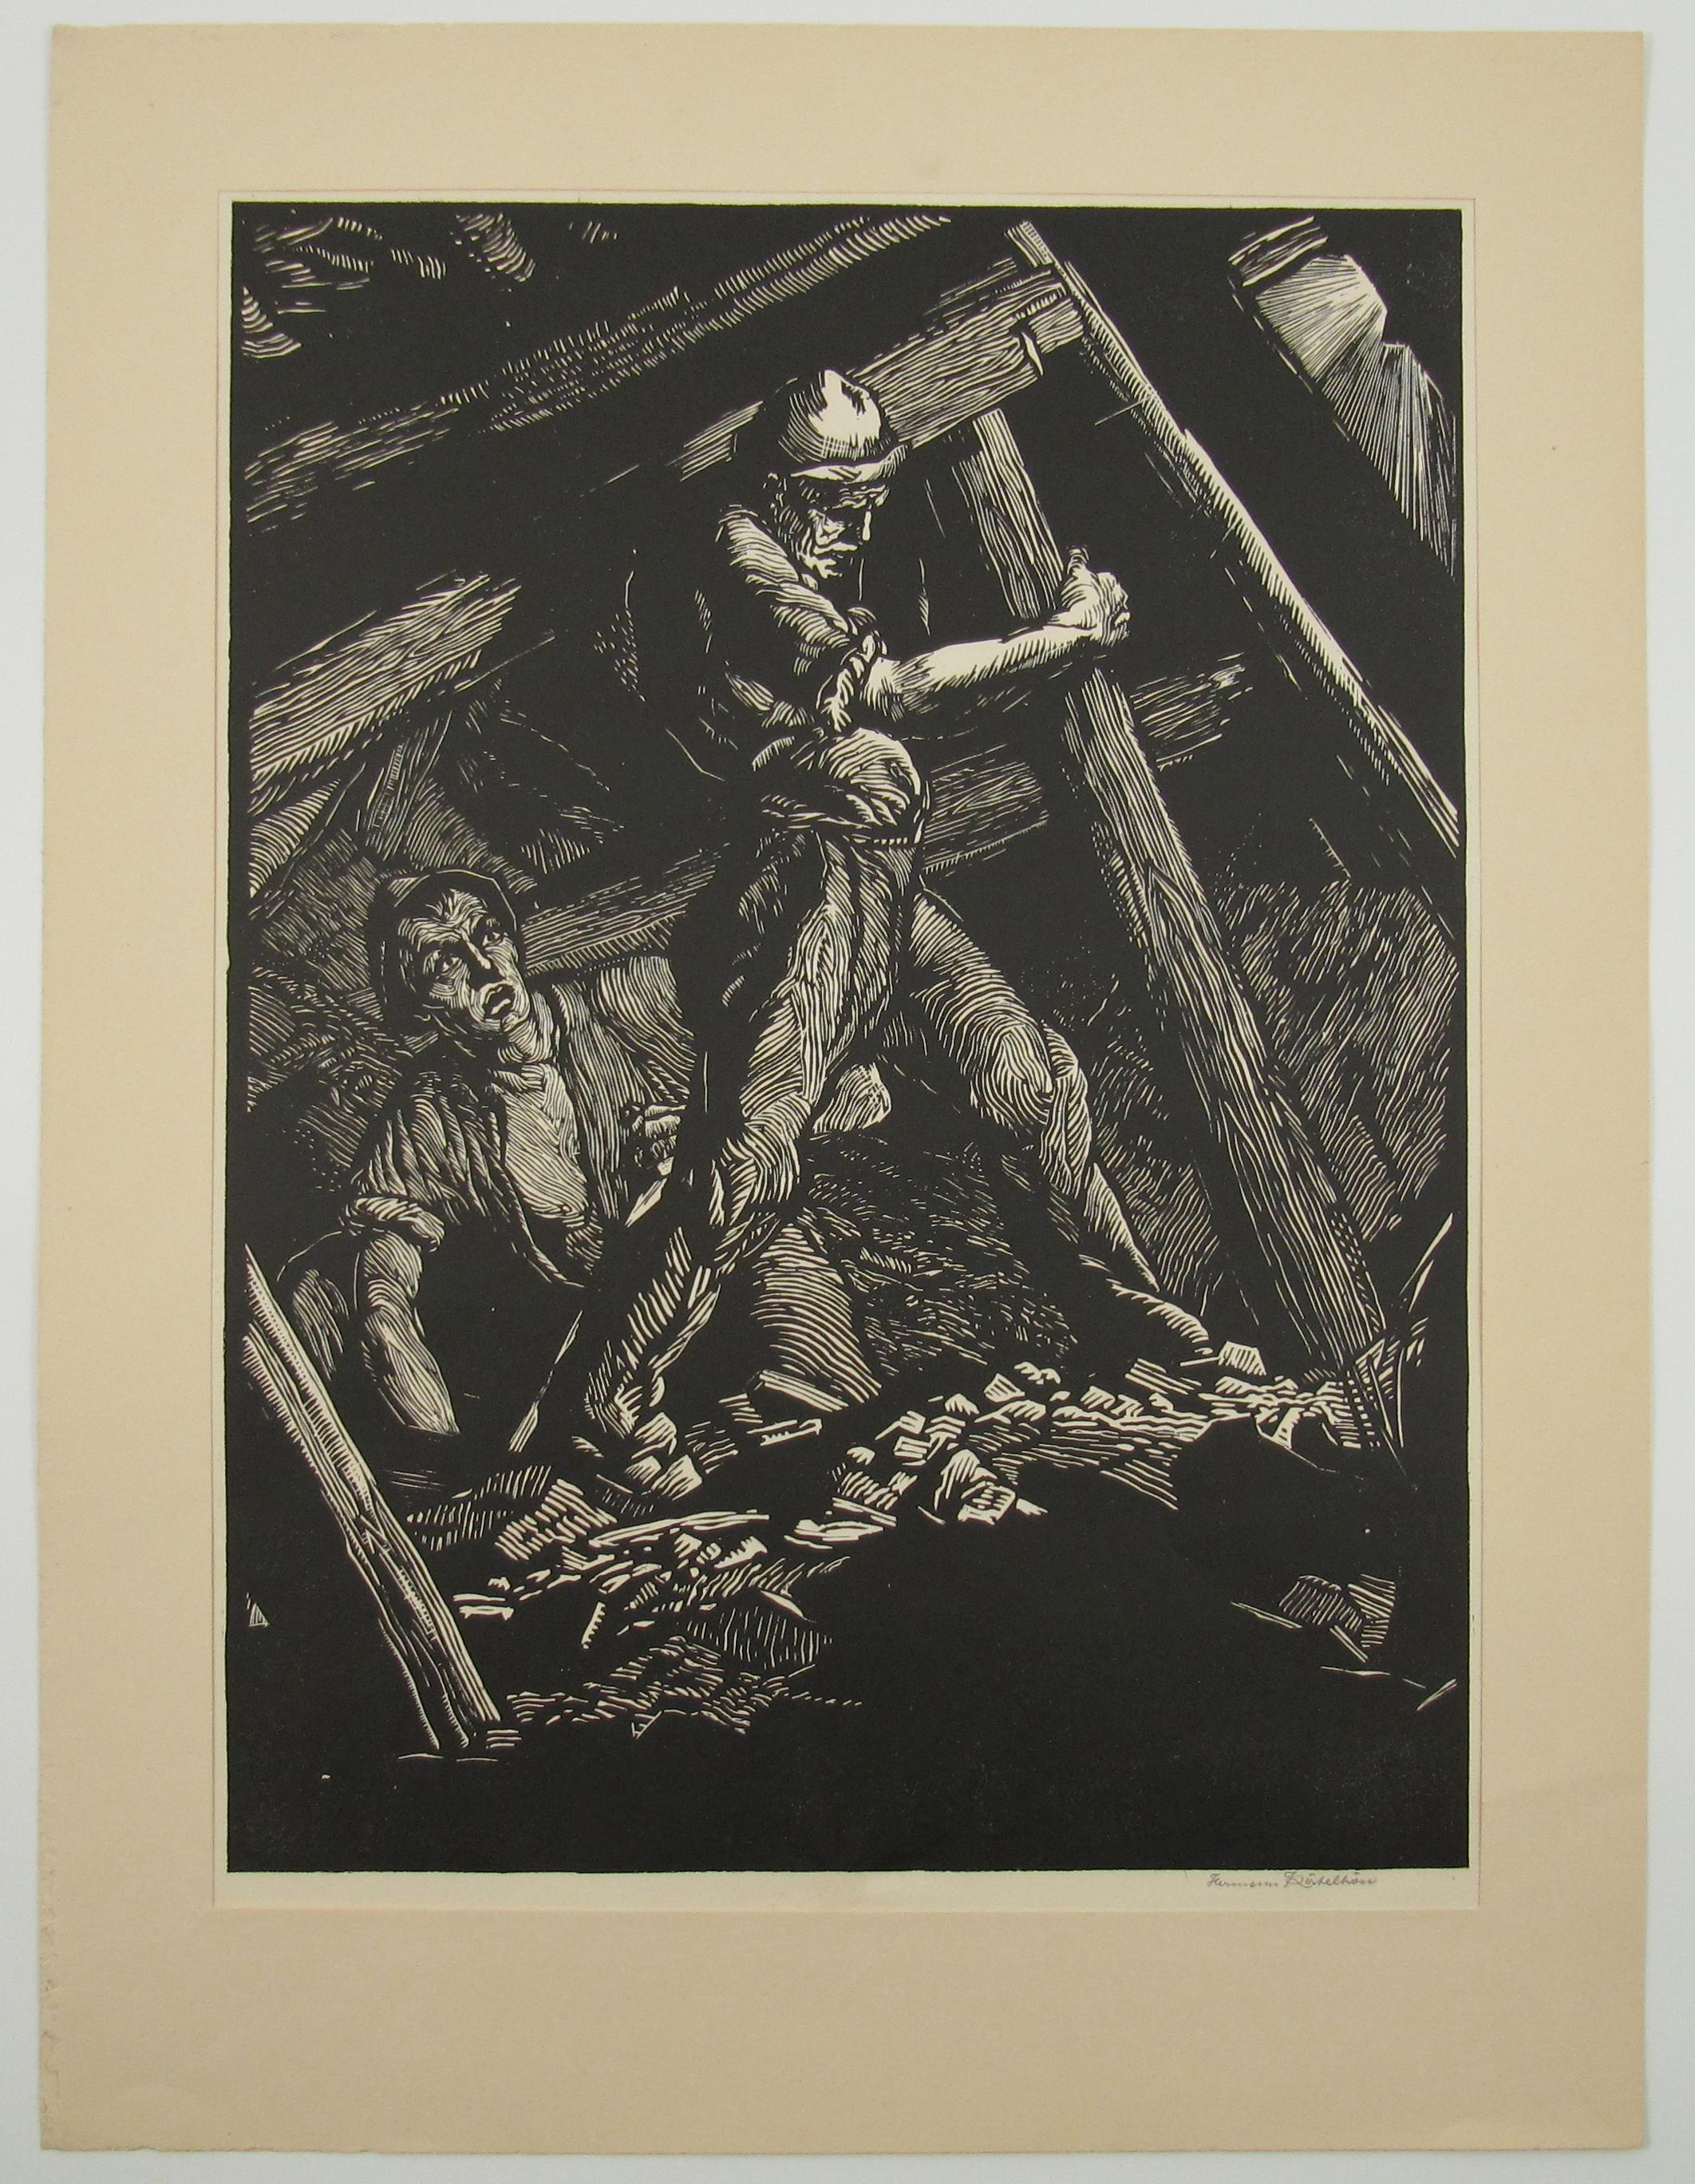 Coal Miners - INDUSTRIAL ART - Pre War German School - Large signed Woodcut - Print by Hermann Katehön